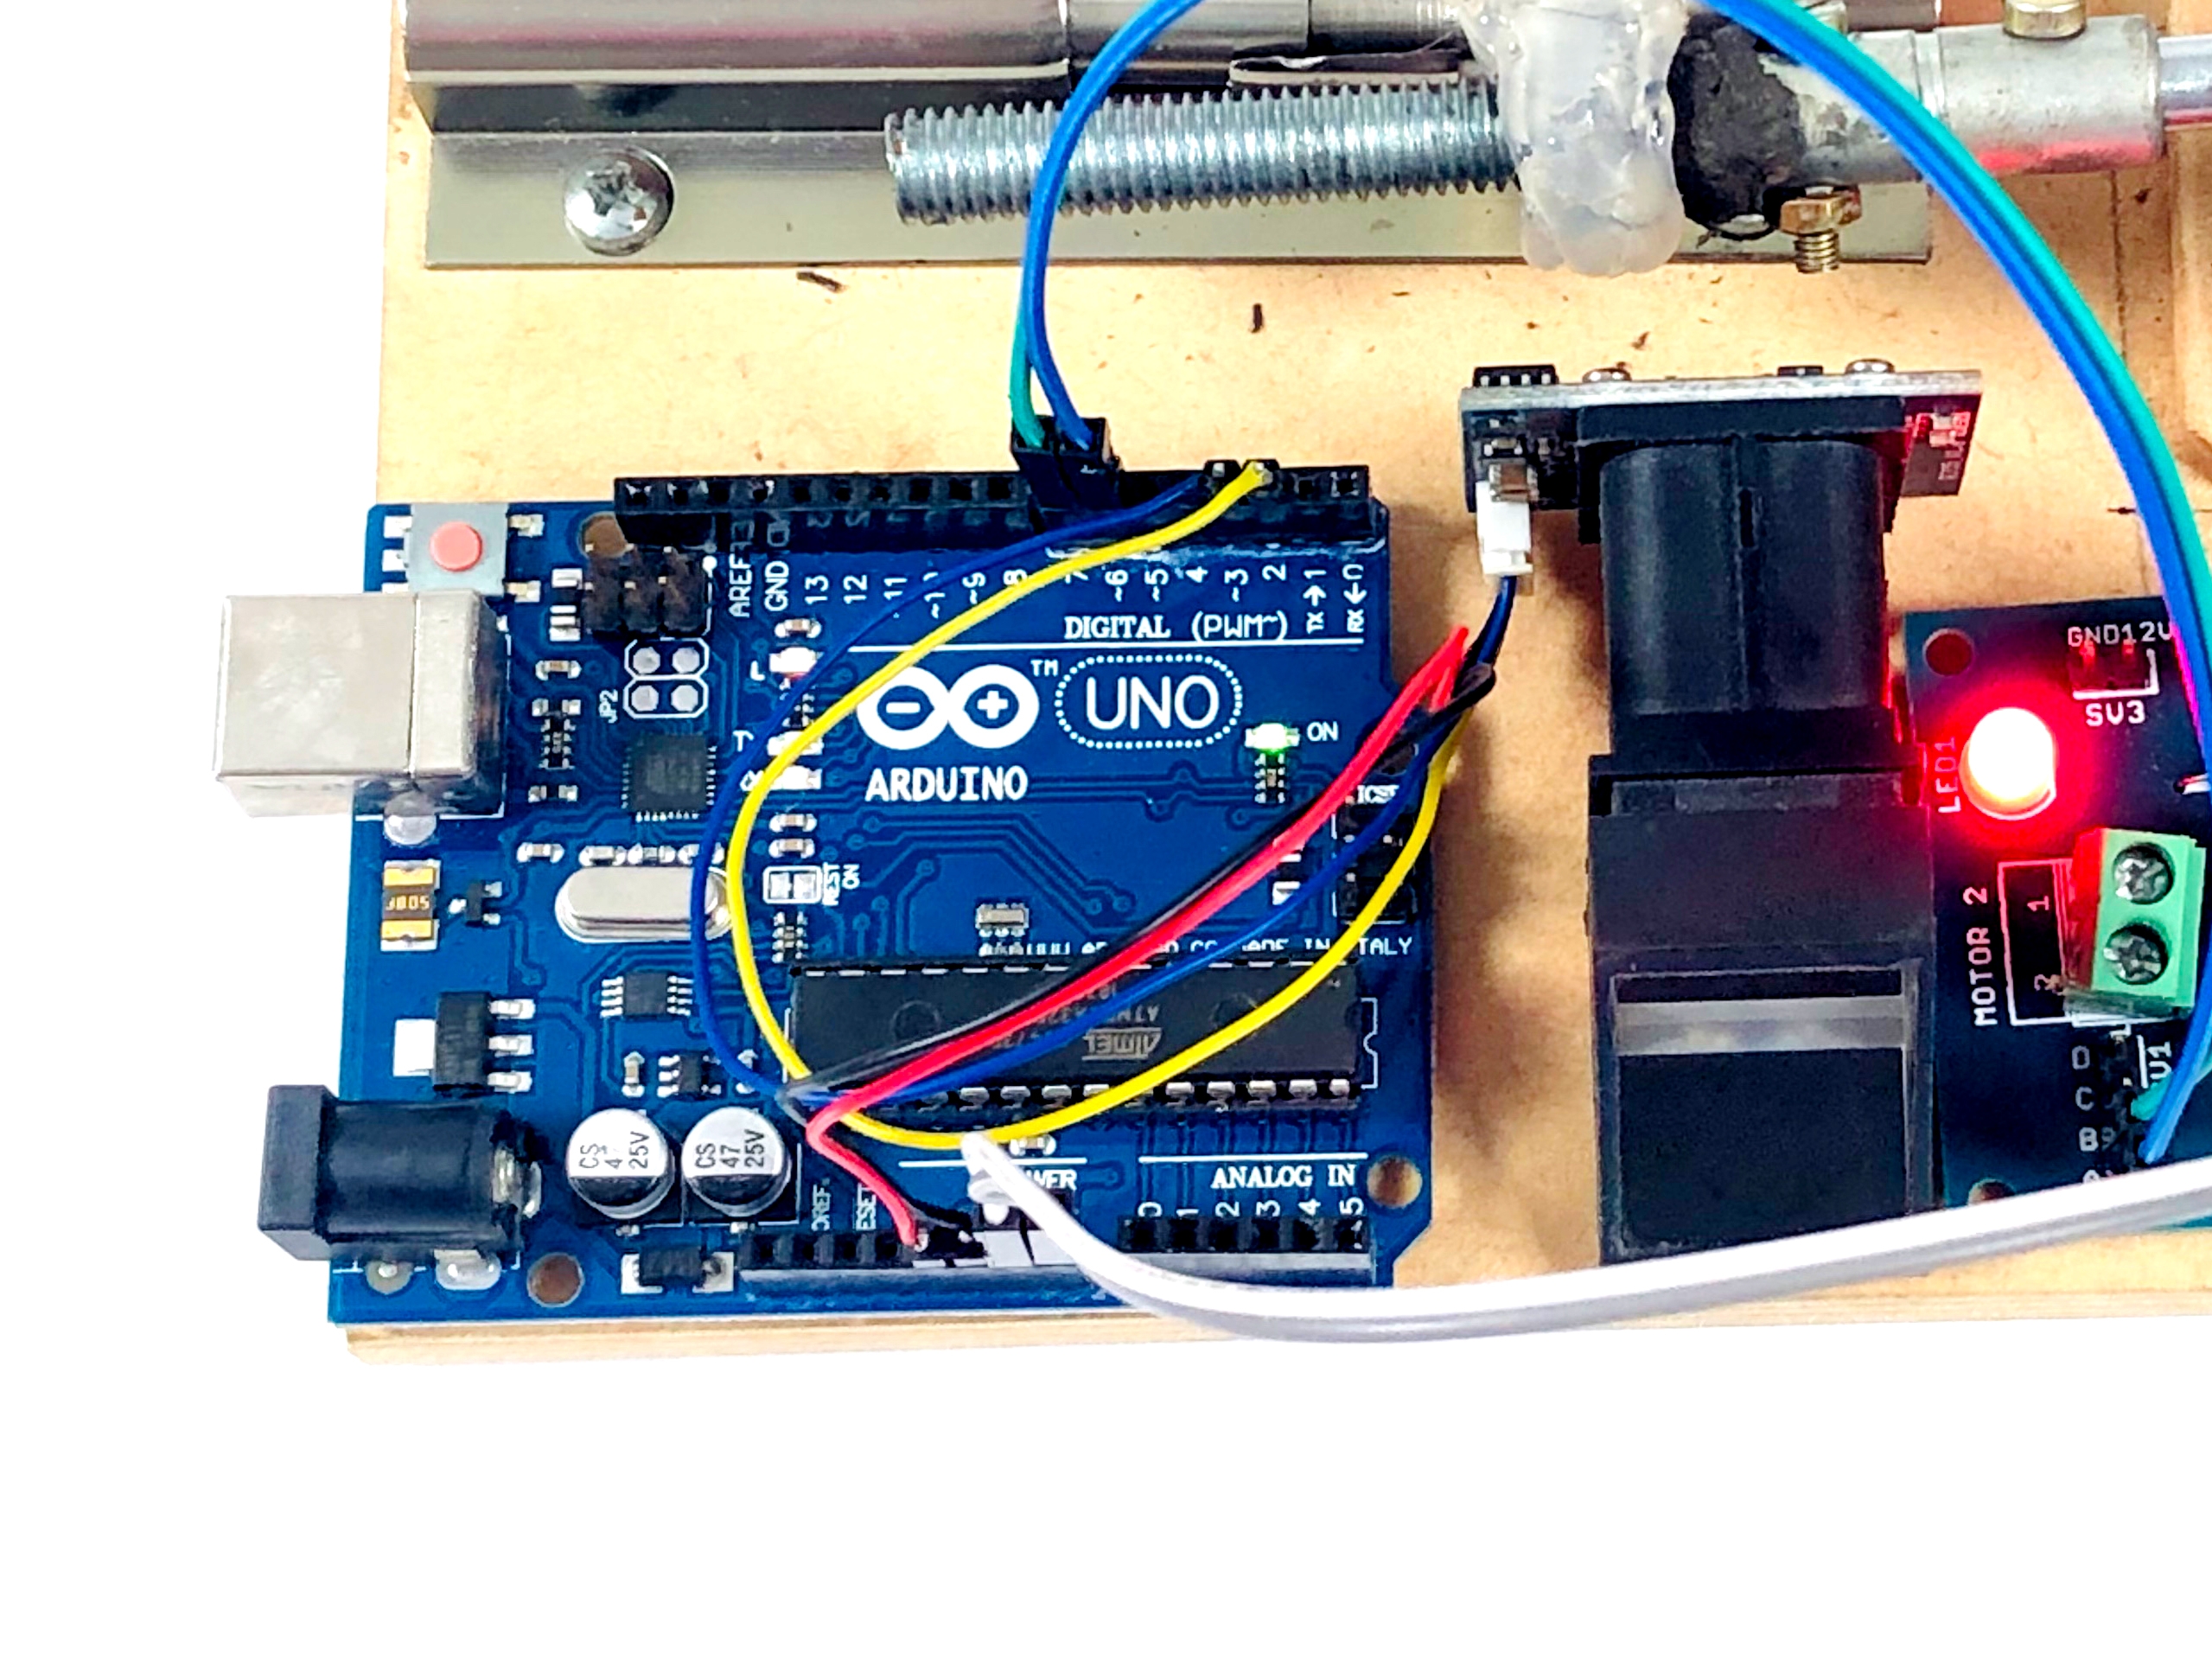 Smart Door lock system with fingerprint using Arduino